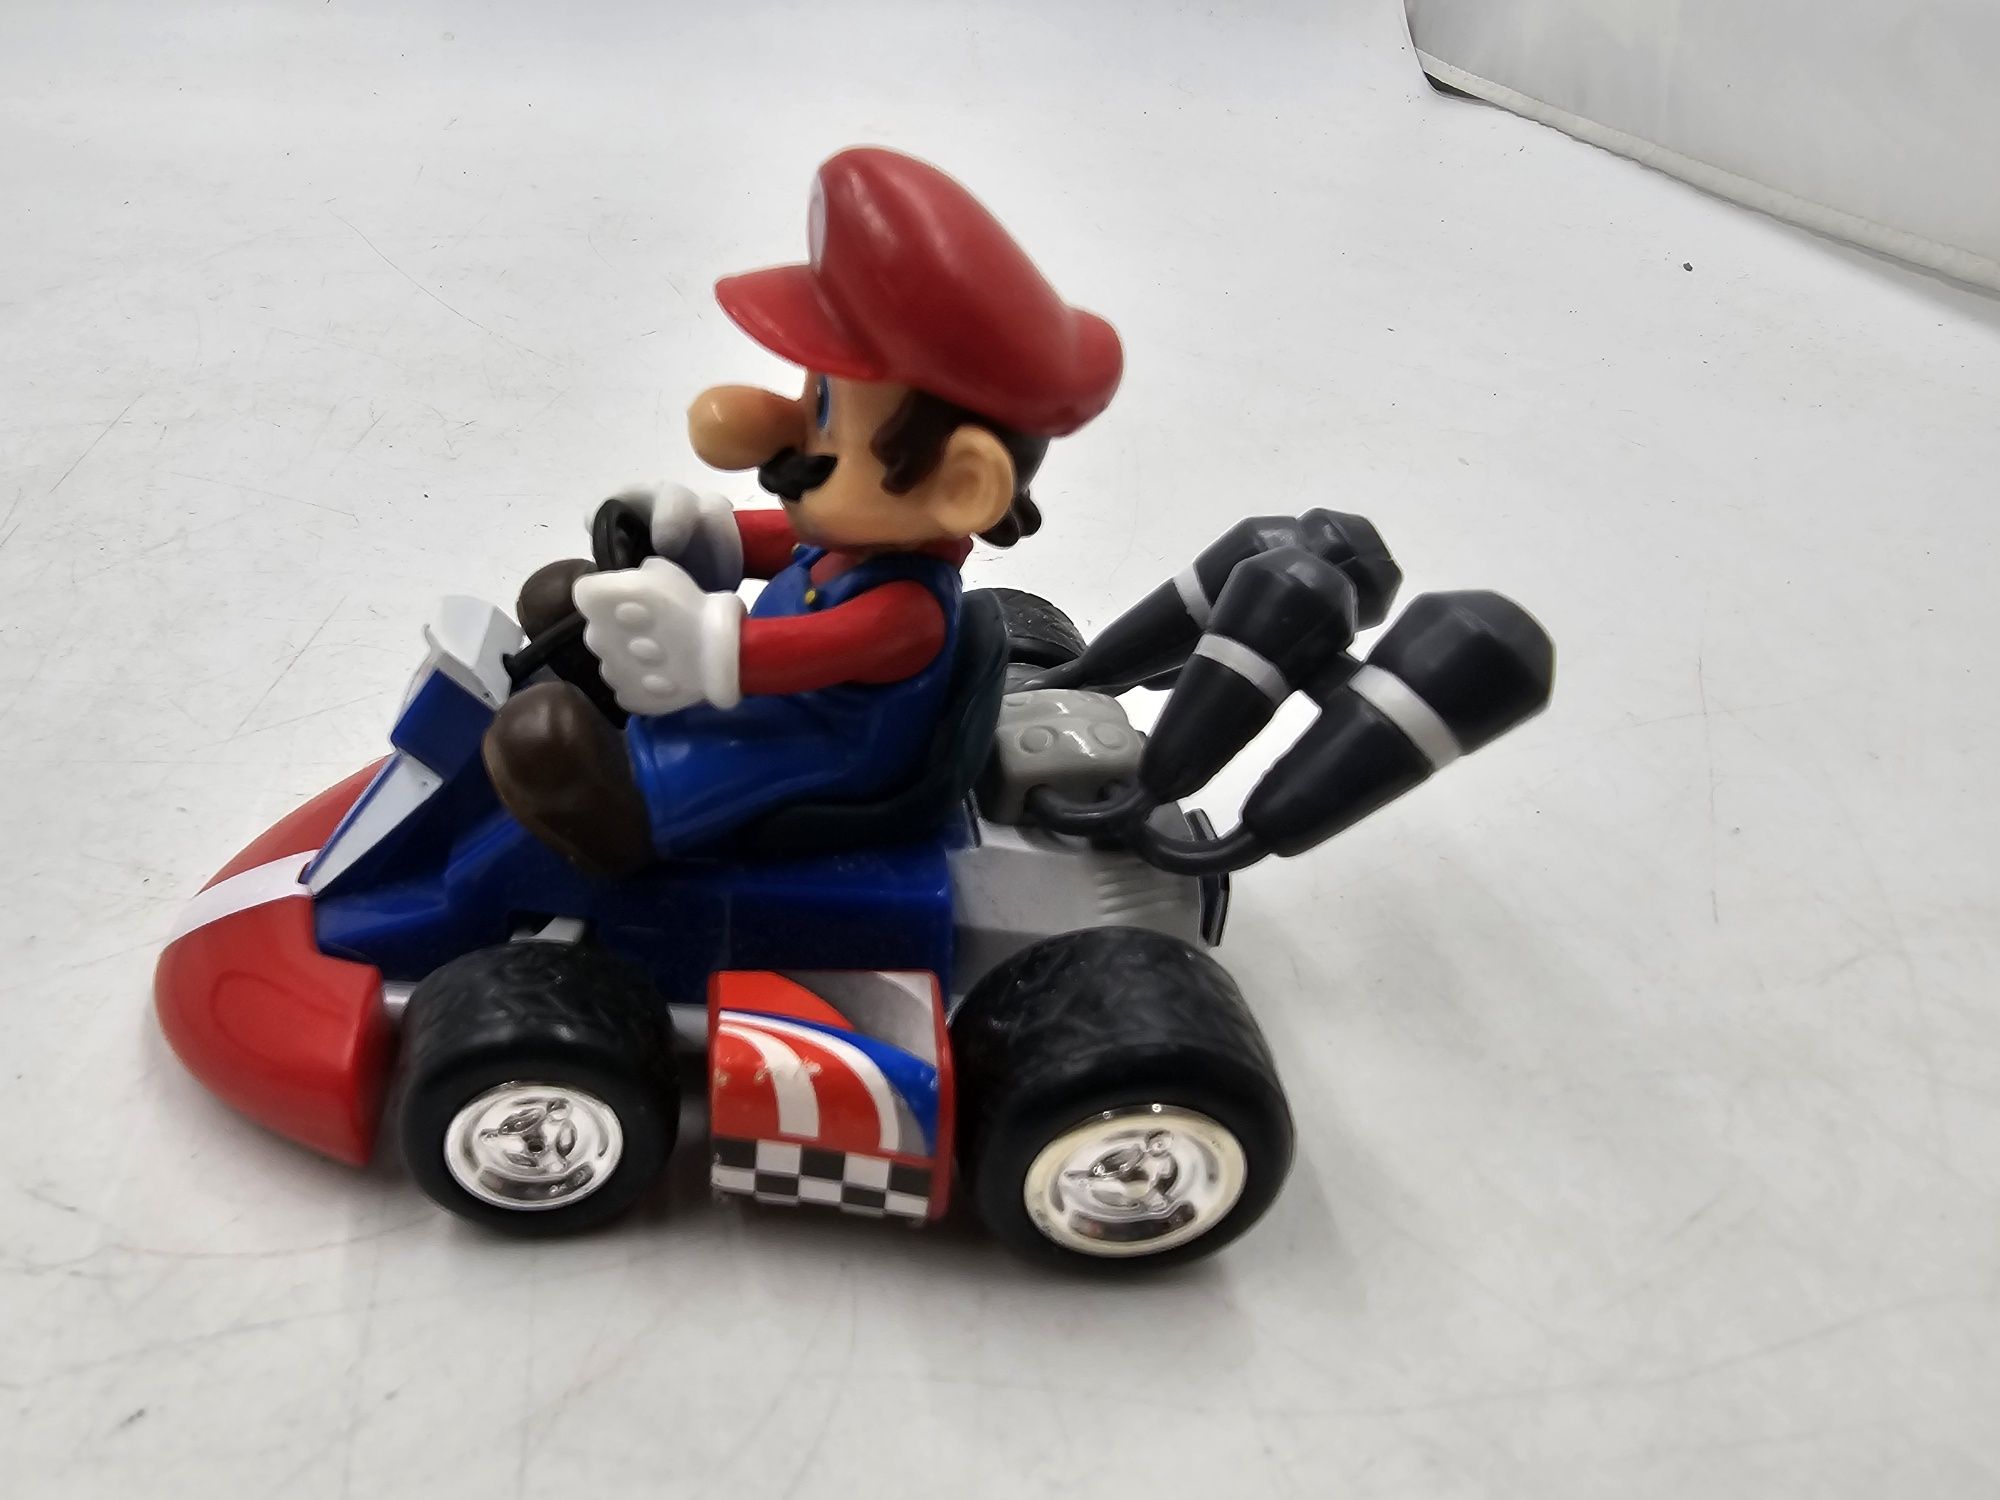 Super Mario figurka w samochodzie